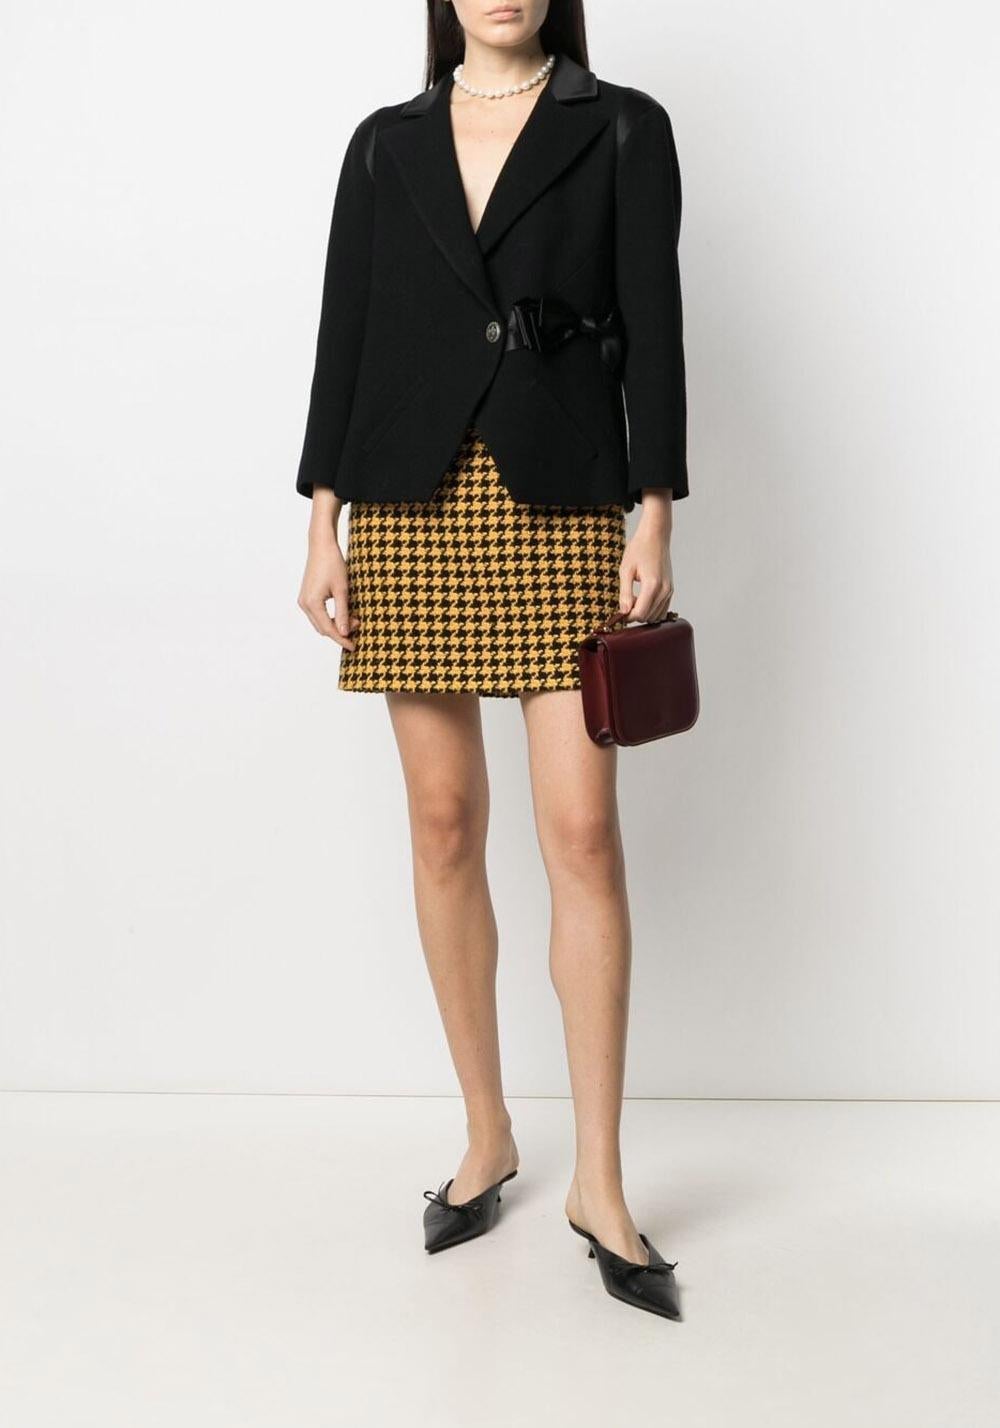 Nouvelle veste intemporelle Chanel en tweed noir dans l'interprétation de la Collection Paris / LONDON, Metiers d'Art par le Maestro Karl Lagerfeld.
Prix boutique supérieur à 9 000
- Boutons 